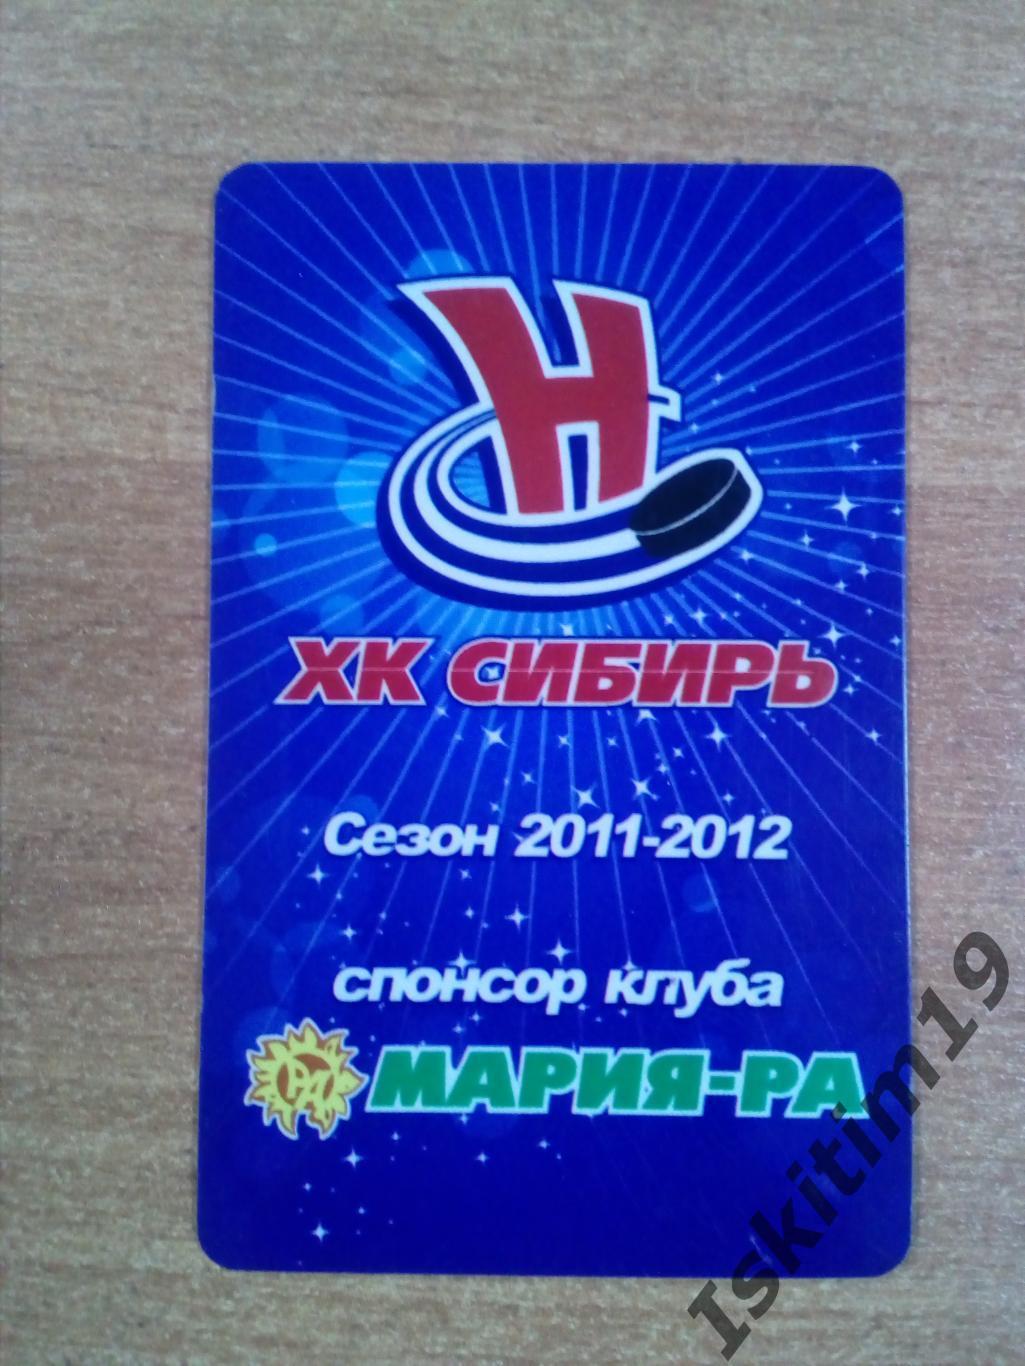 Календарь домашних матчей хоккейного клуба Сибирь Новосибирск сезон 2011/2012